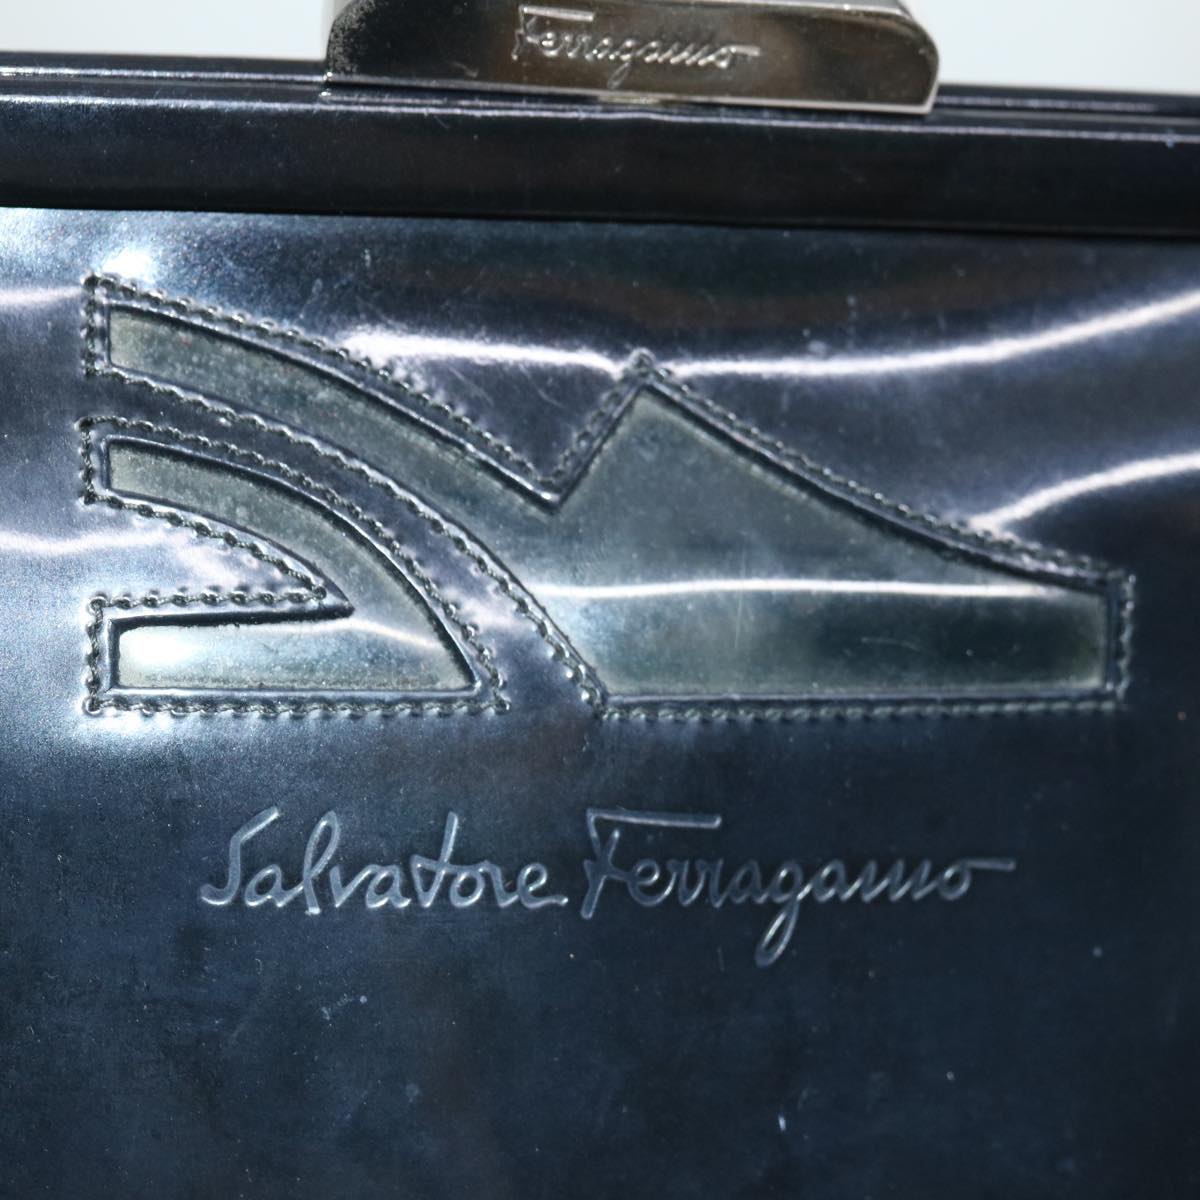 Salvatore Ferragamo Hand Bag Patent leather Black Auth 67156